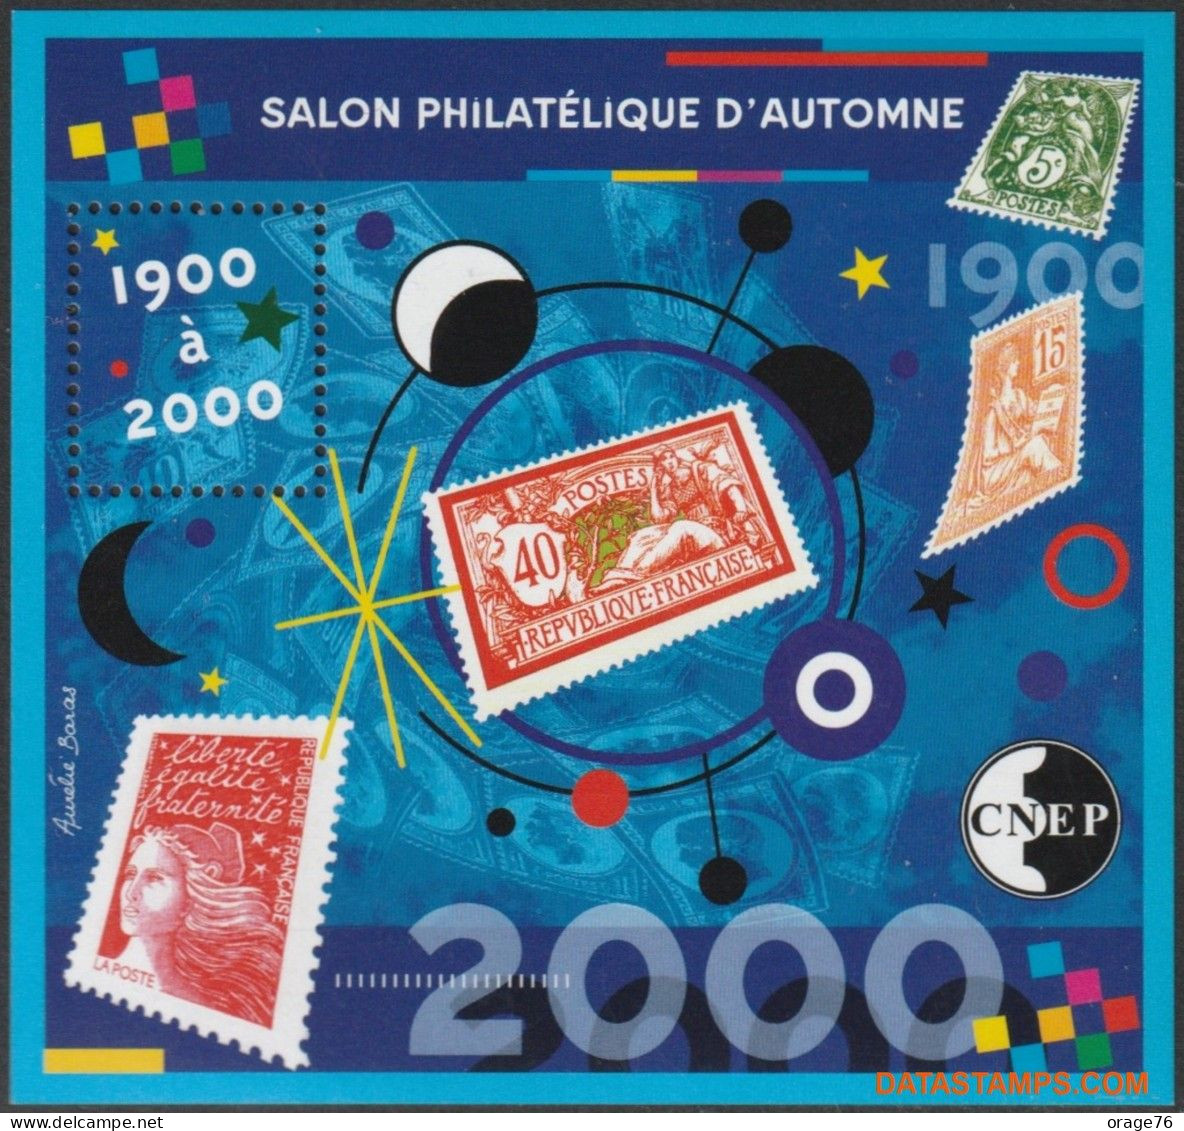 BLOC CNEP N° 32 - SALON PHILATÉLIQUE D'AUTOMNE - PARIS 2000,  TTB - CNEP